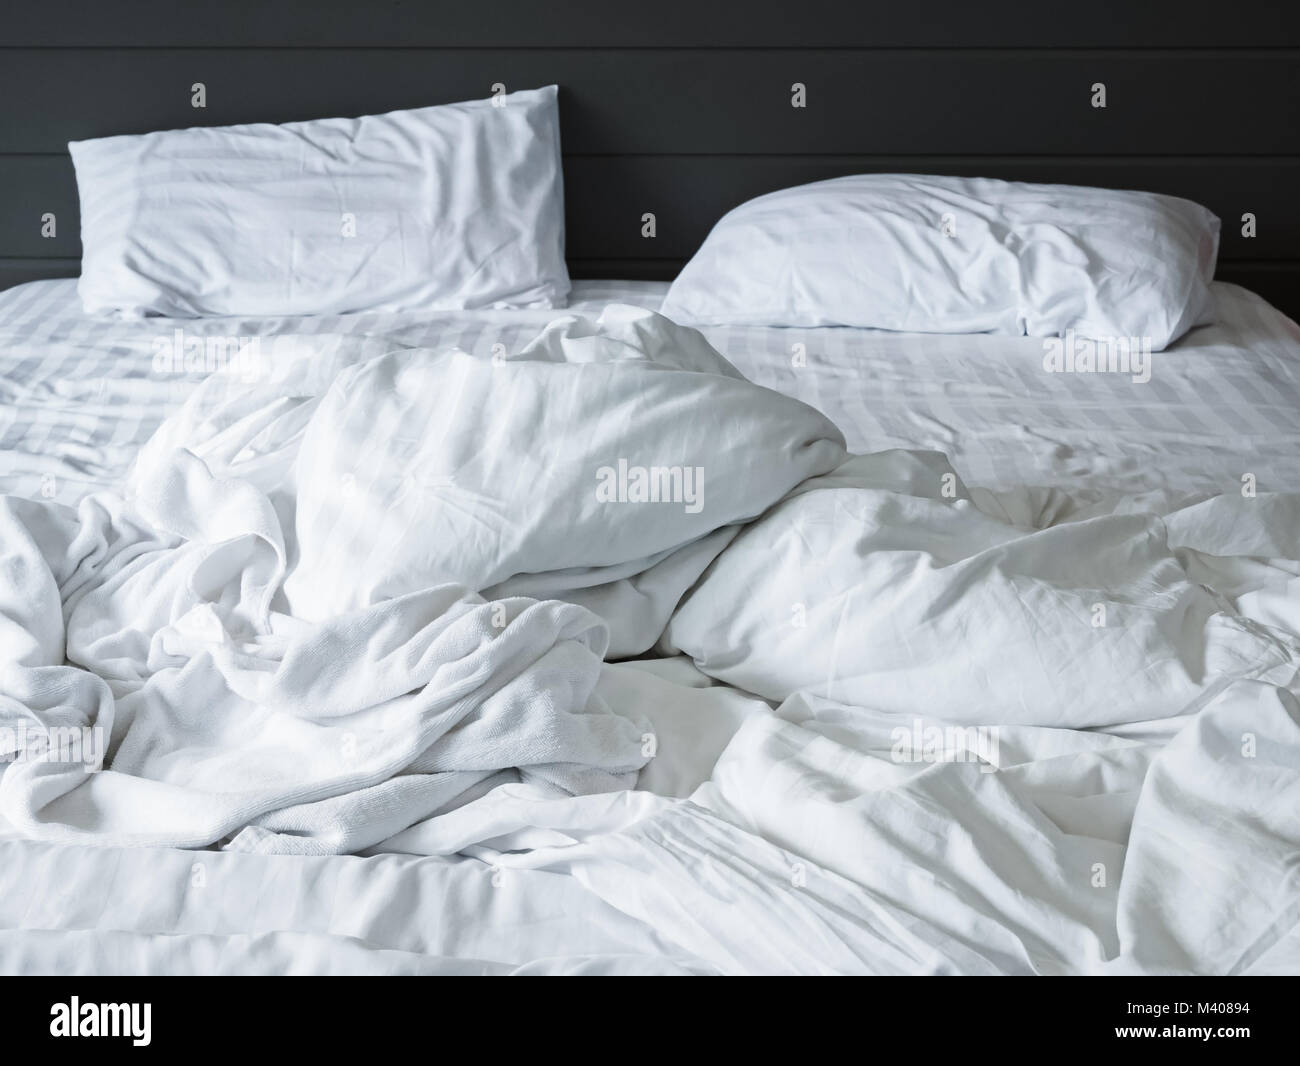 Confuso lenzuola bianche lenzuola e cuscino nella camera da letto ,sfondo disfatto disordinati dopo aver letto comfort concetto del sonno Foto Stock